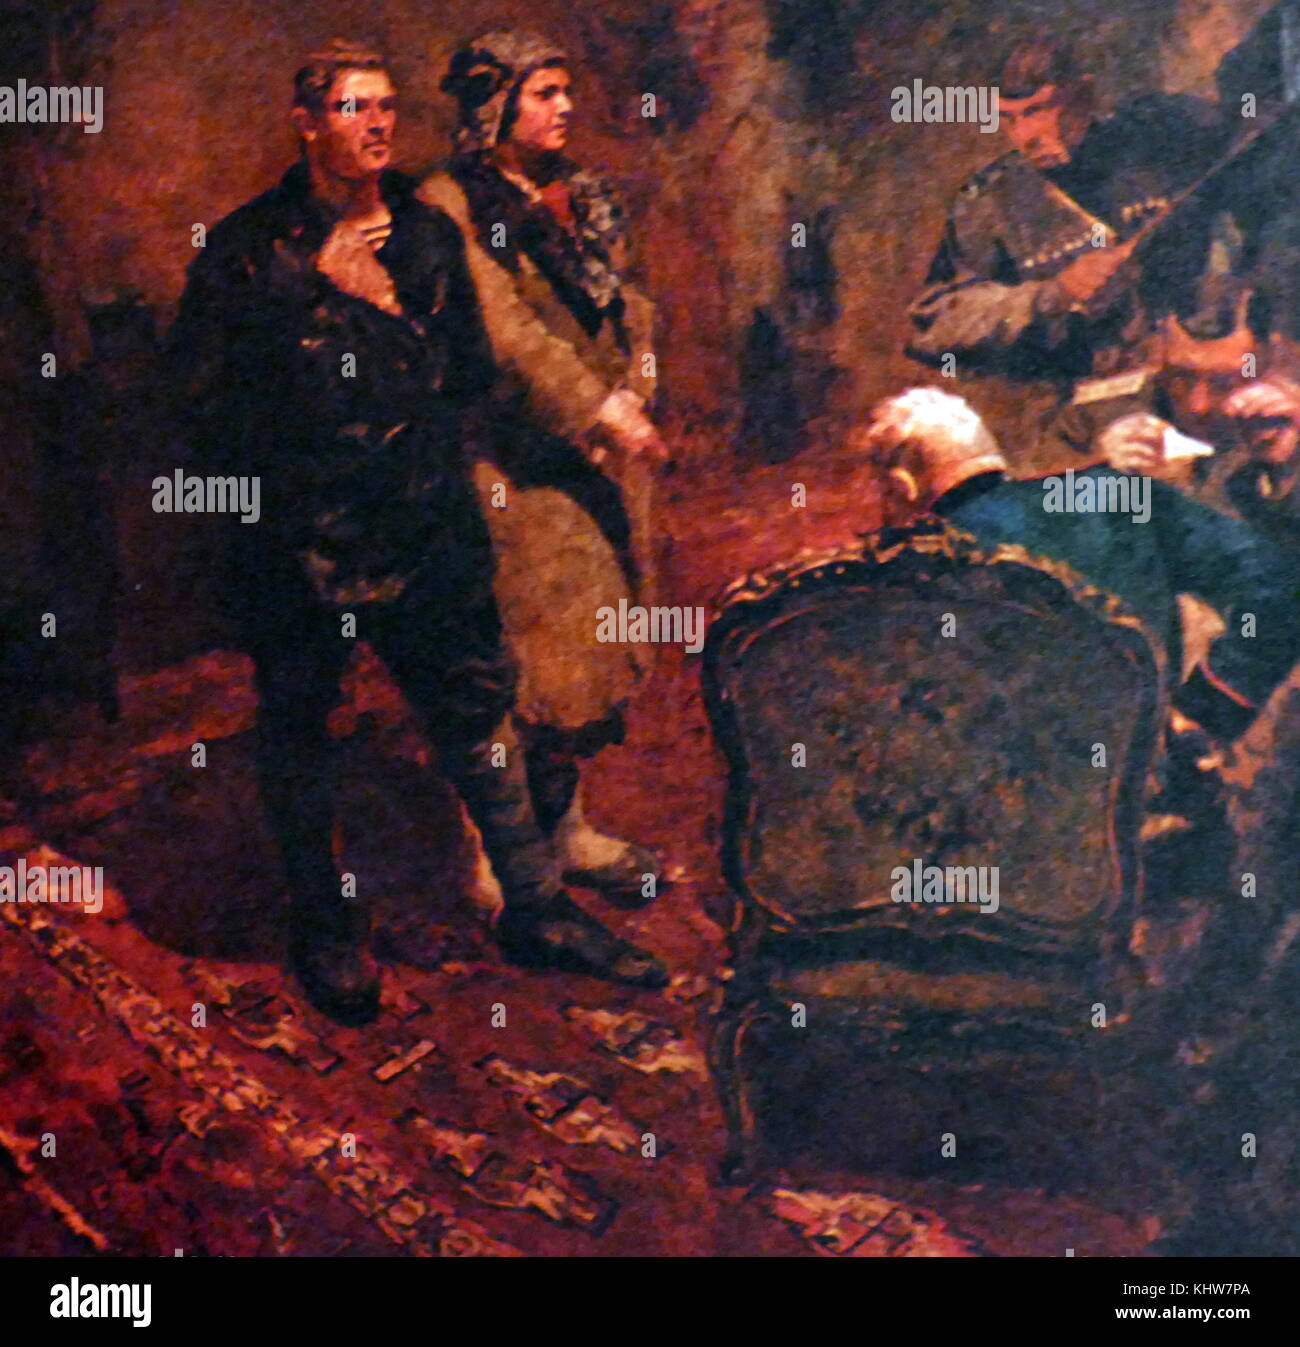 Gemälde der Darstellung zwei Bolschewiki über ihre politischen Aktivitäten, die von der Provisorischen Regierung nach dem Juli Tage unterdrückt wurden verhört zu werden. Erreichen für seine Pistole, der offizier (rechts) bereit, um das Interview zu Ende scheint. Vom 20. Jahrhundert Stockfoto